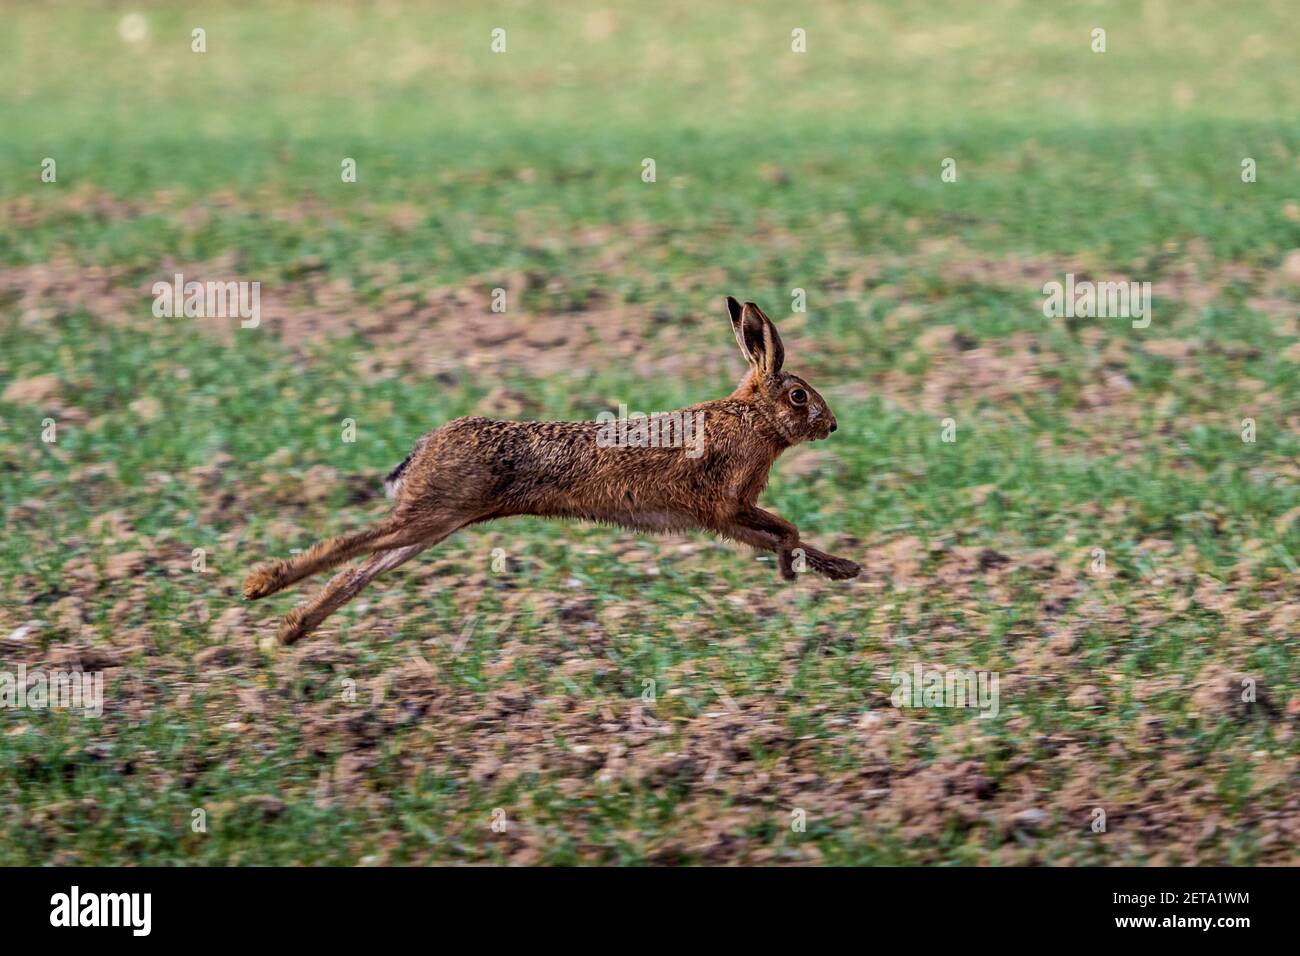 Running Hare - lepre europee che si trovano in un campo di Cambridgeshire nel sud dell'Inghilterra. Lepre marrone in esecuzione. Lepus europaeus. Foto Stock